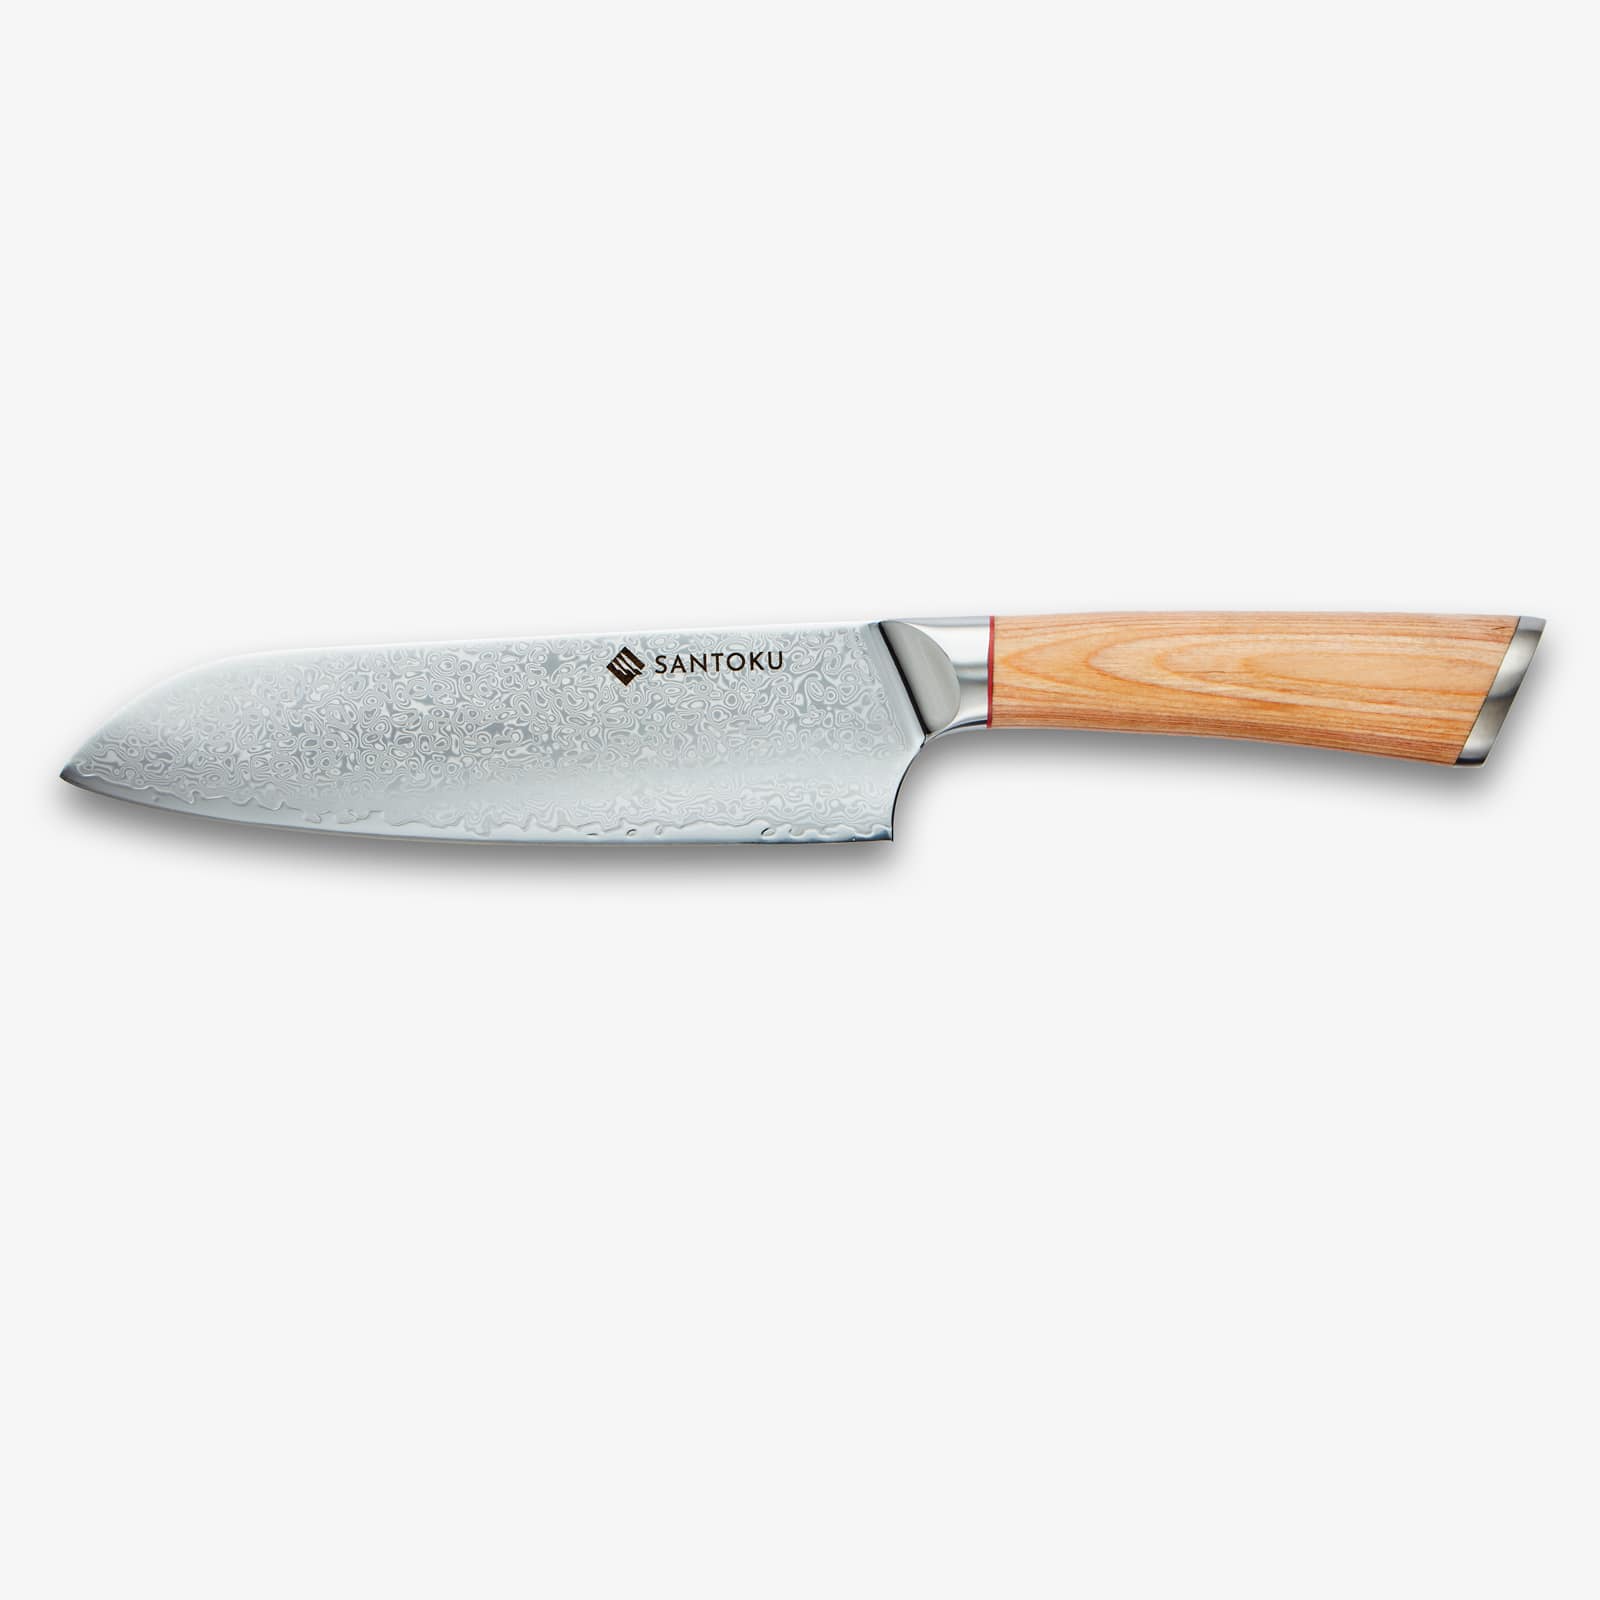 هاروتا (はるた)67 طبقة AUS 10 سكاكين المطبخ دمشق الصلب